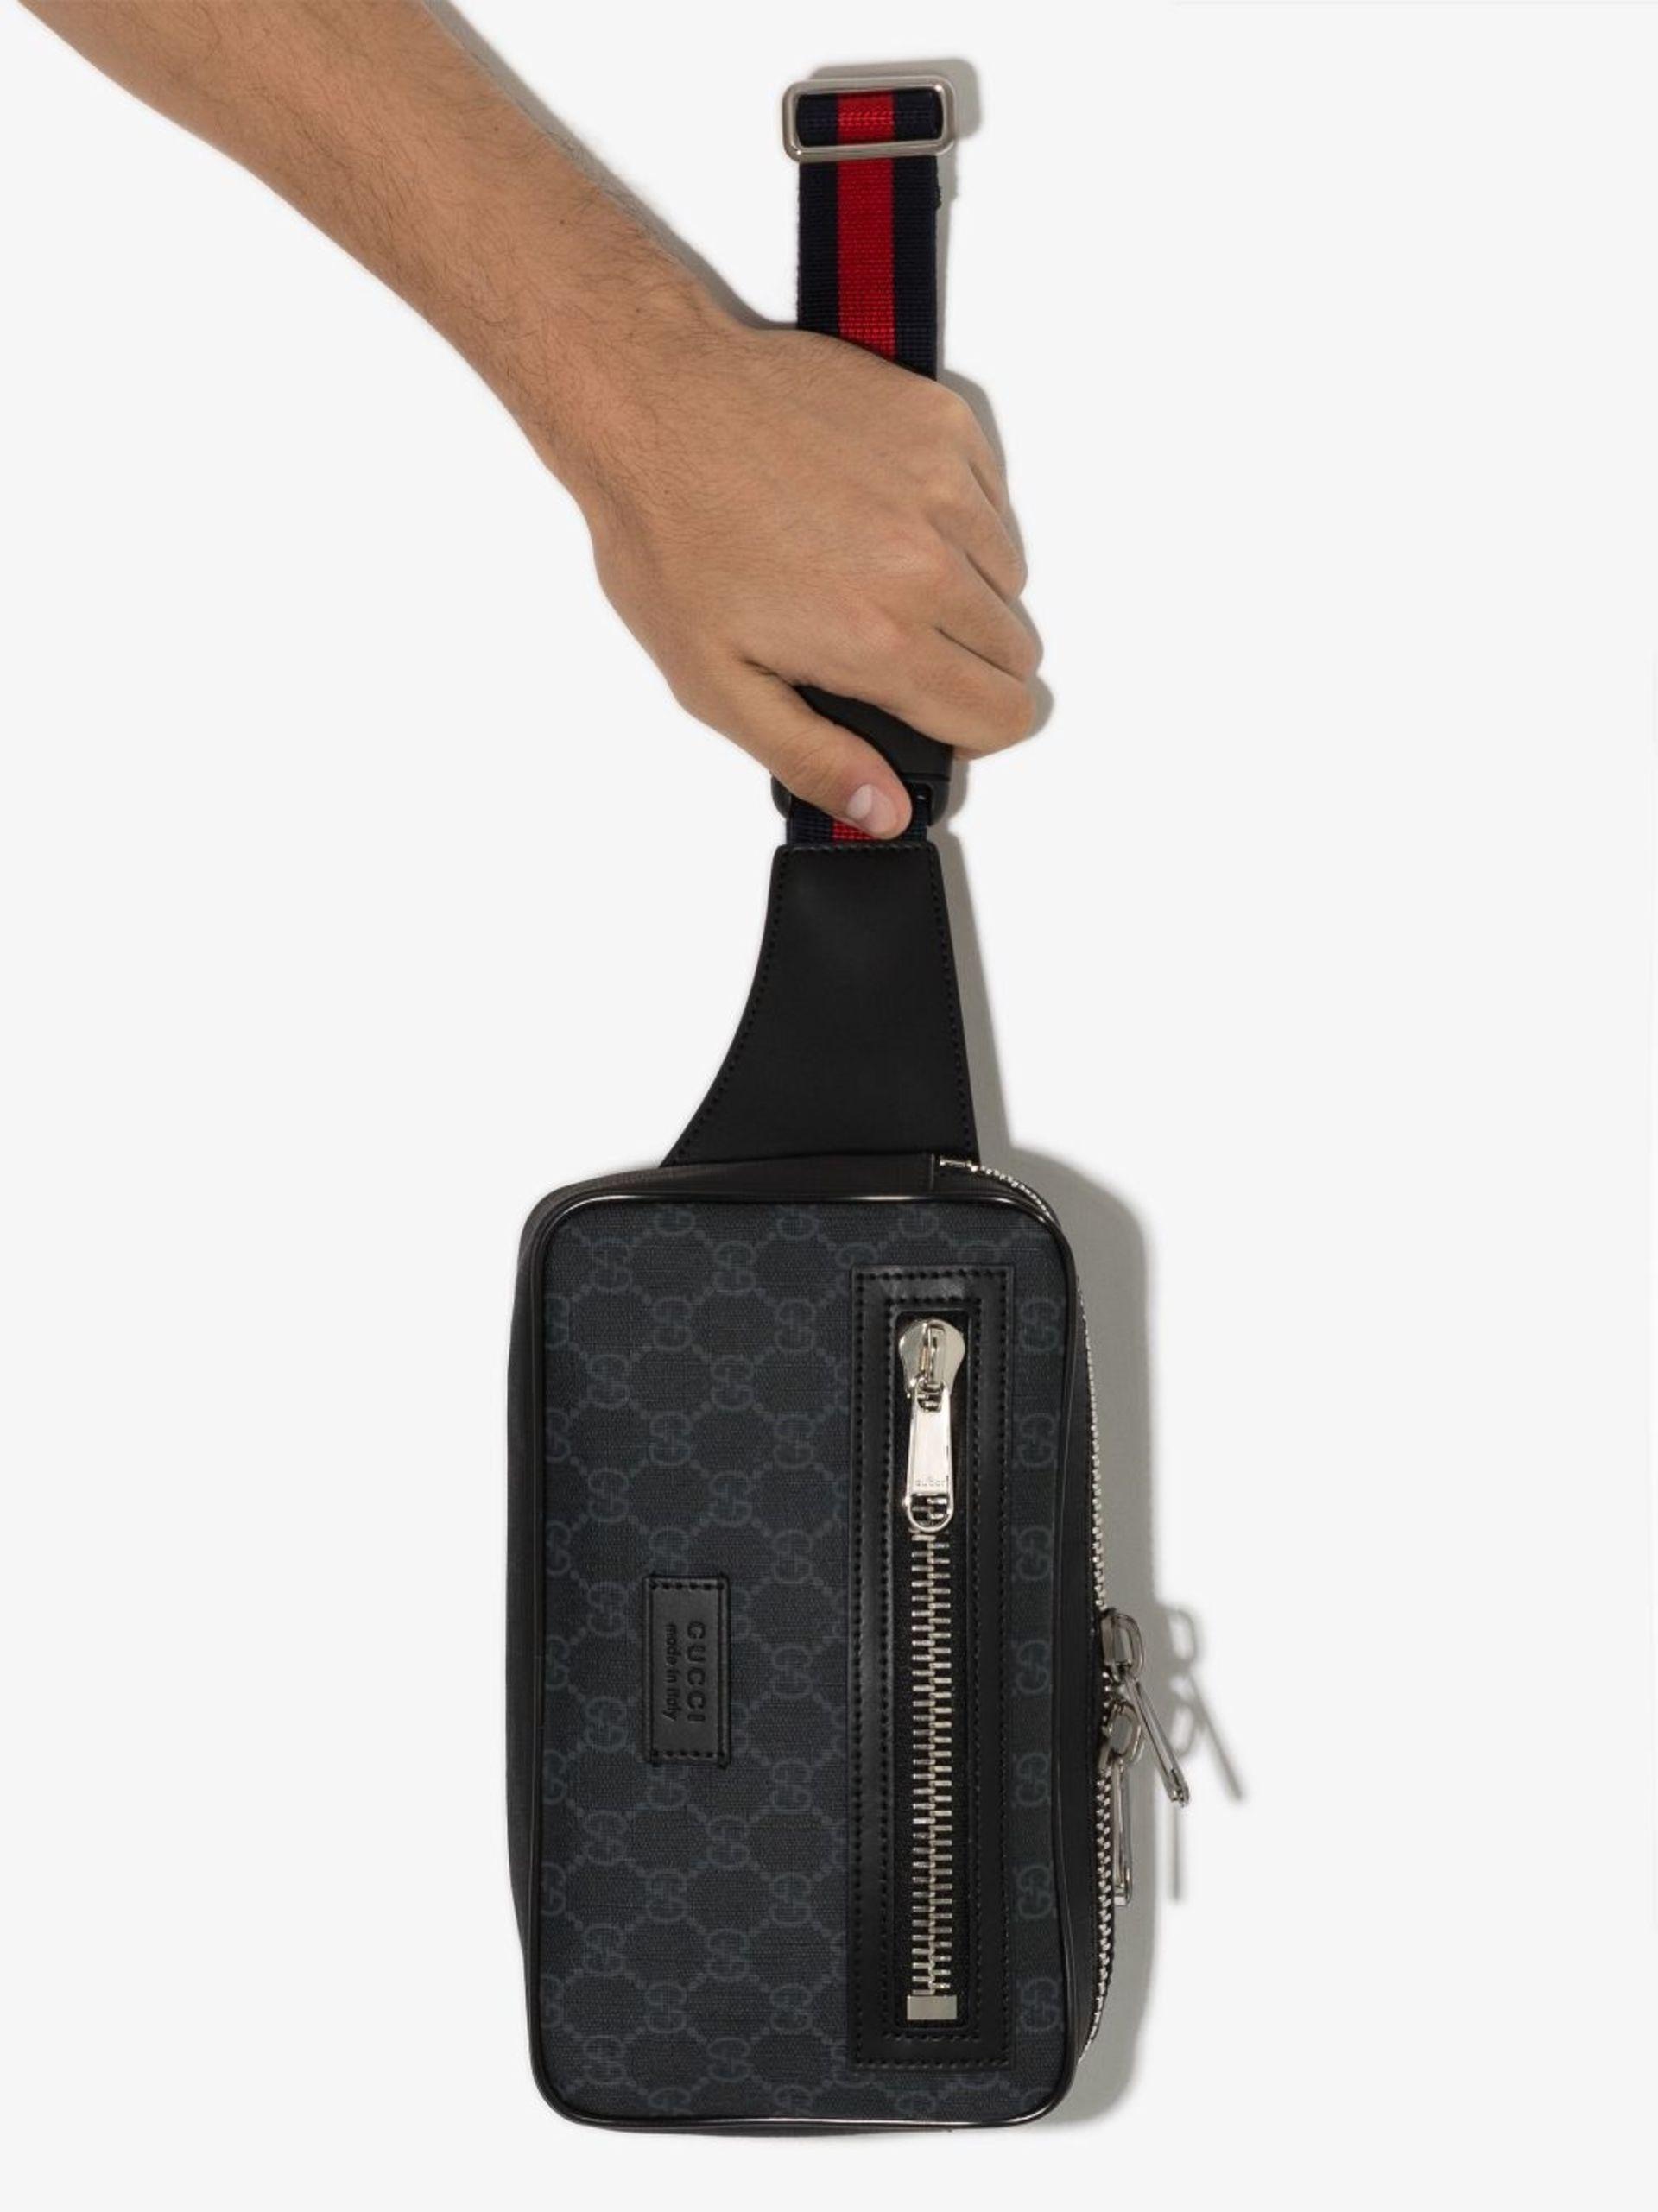 Gucci black Leather GG Supreme Belt Bag | Harrods UK